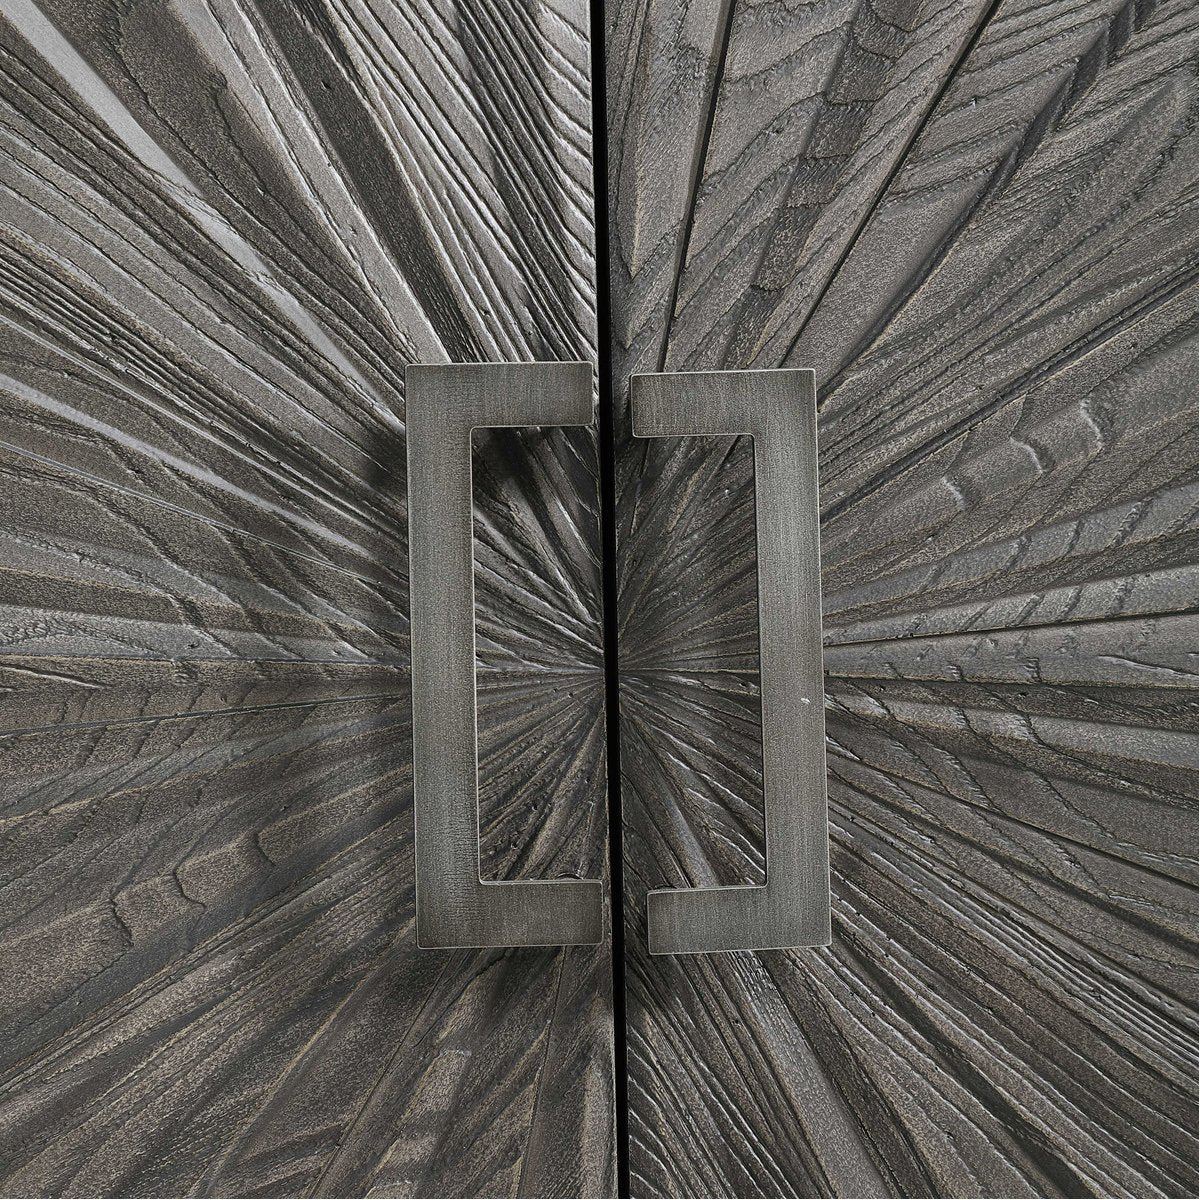 Uttermost Shield Gray Oak 2-Door Cabinet